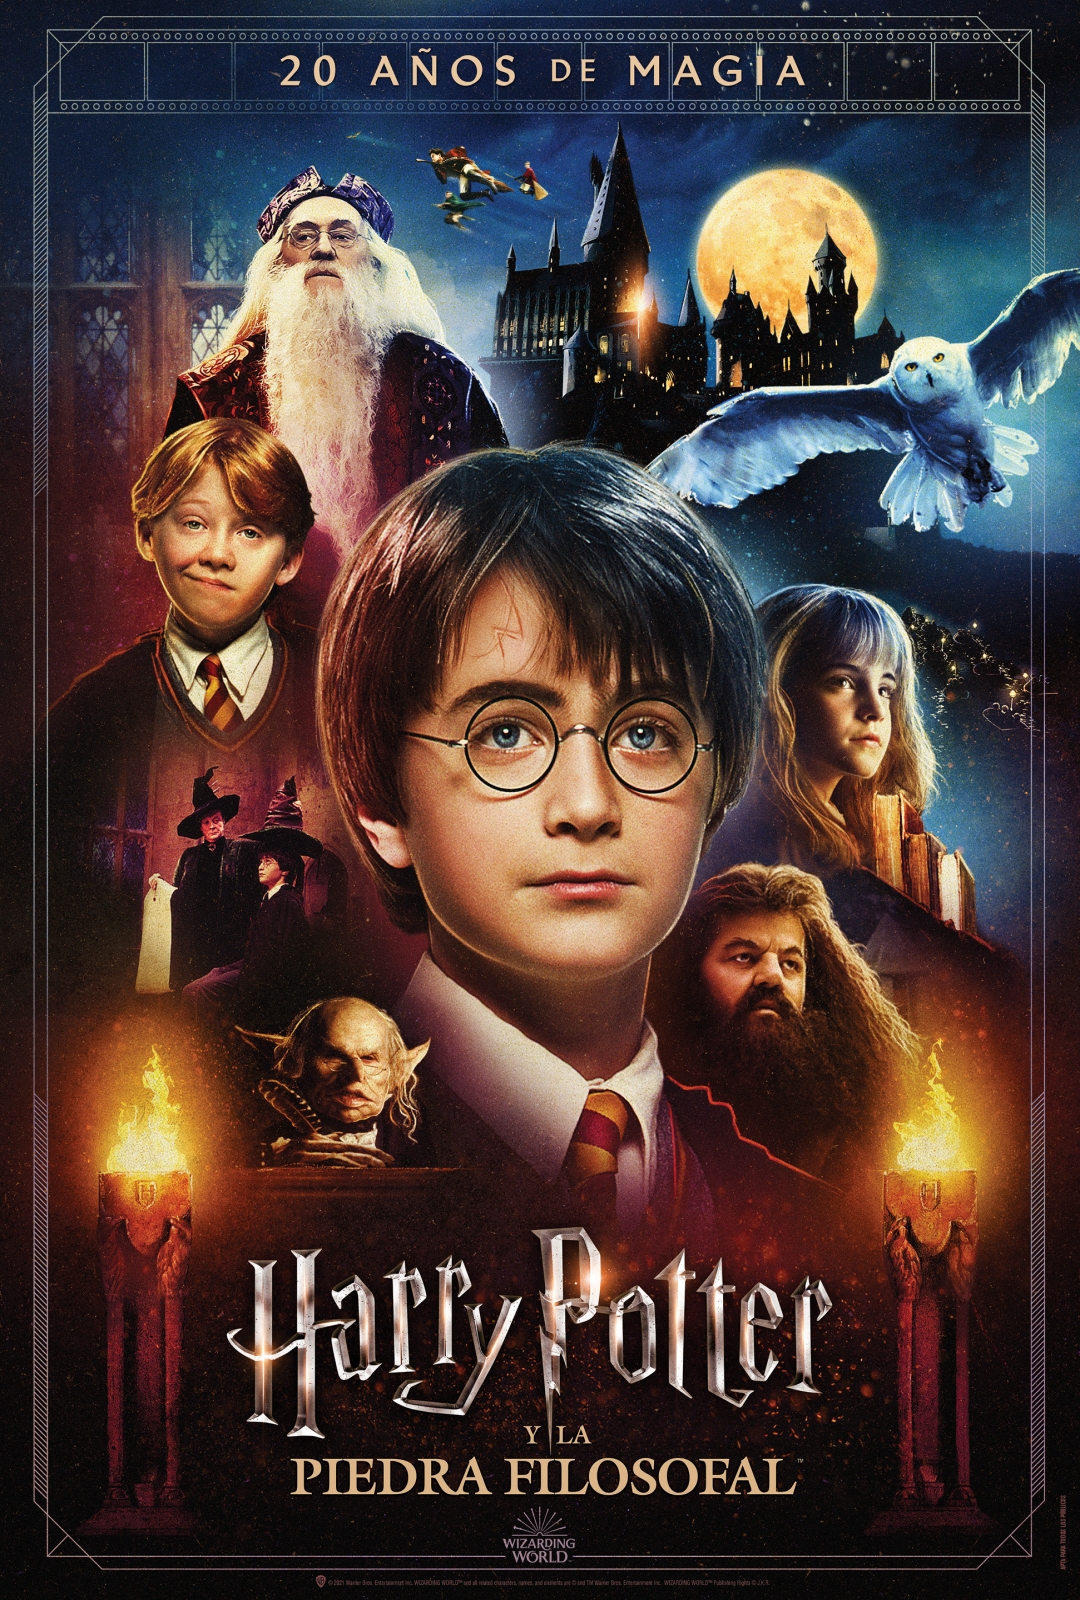 Para tener un cumpleaños mágico ❤️ - Harry Potter por siempre.